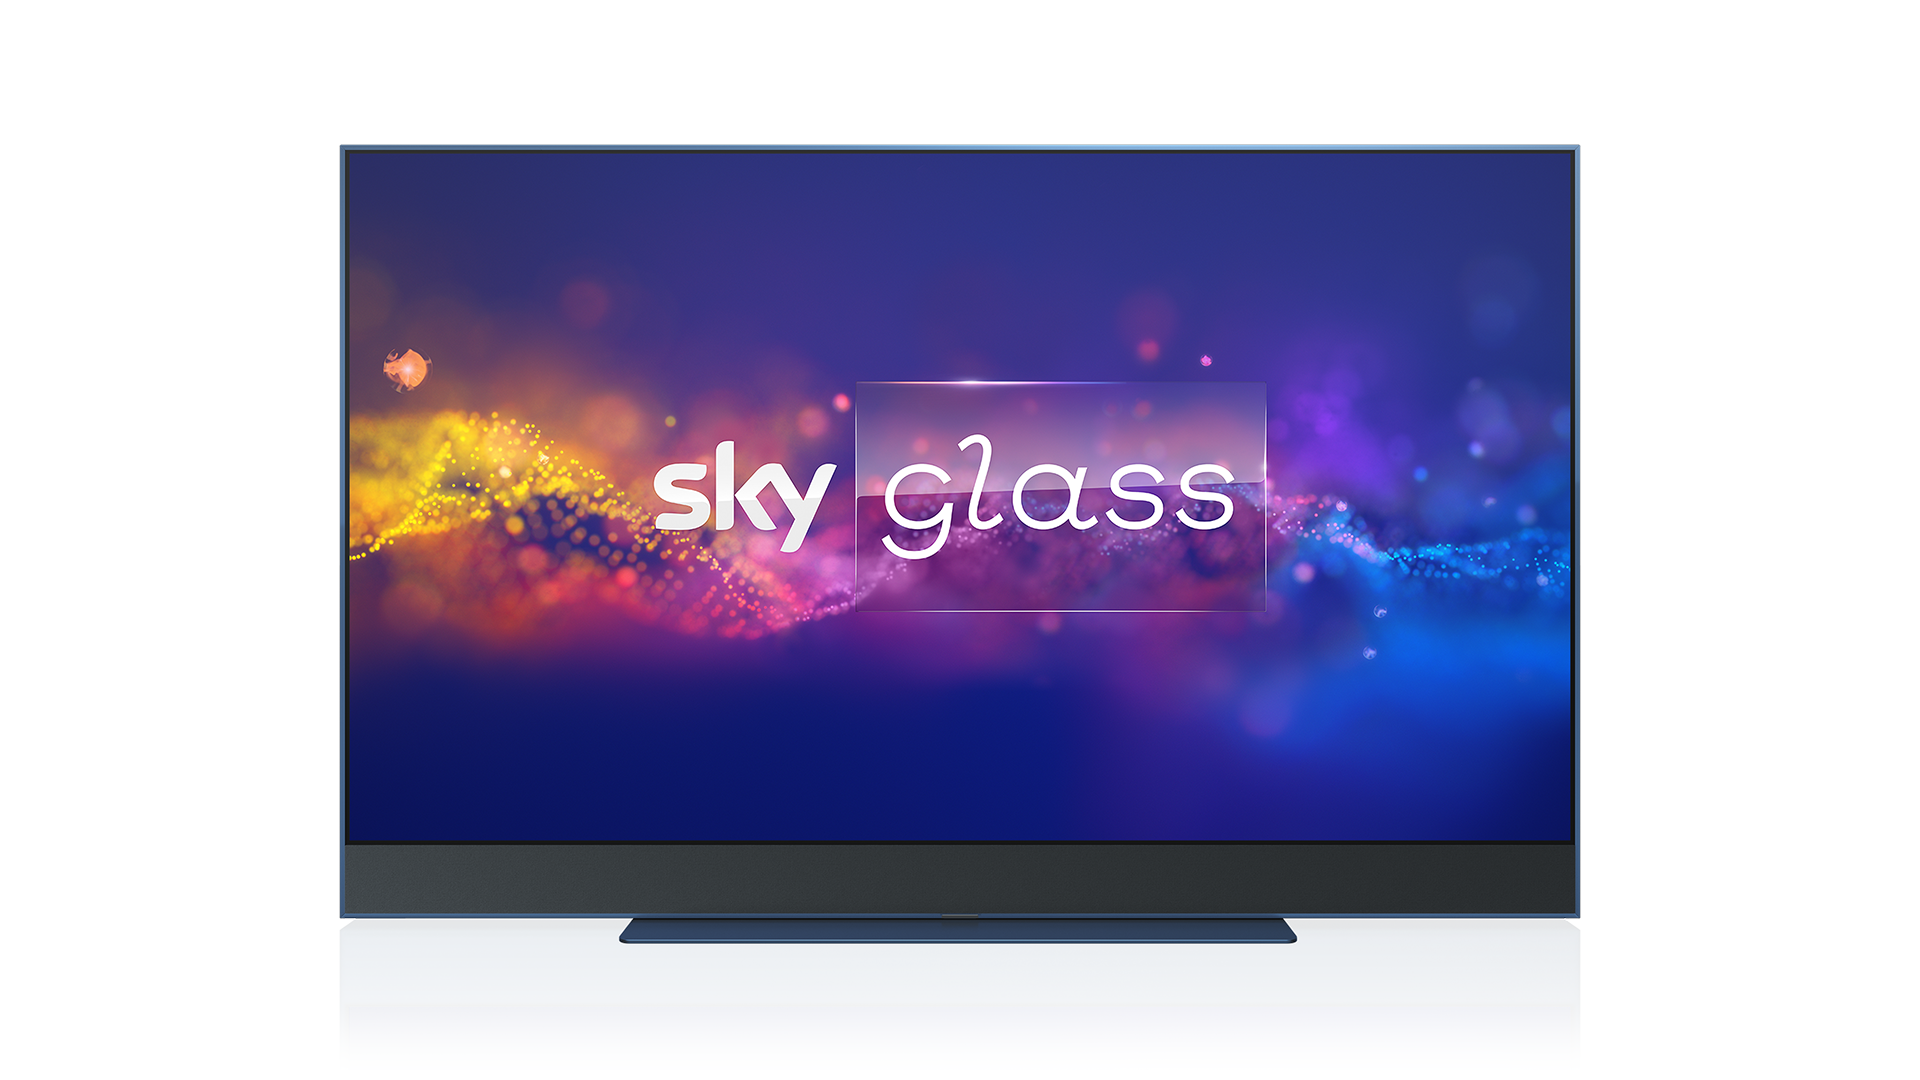 Sky Glass è in offerta flash: anticipo di 25 euro per nuovi e già